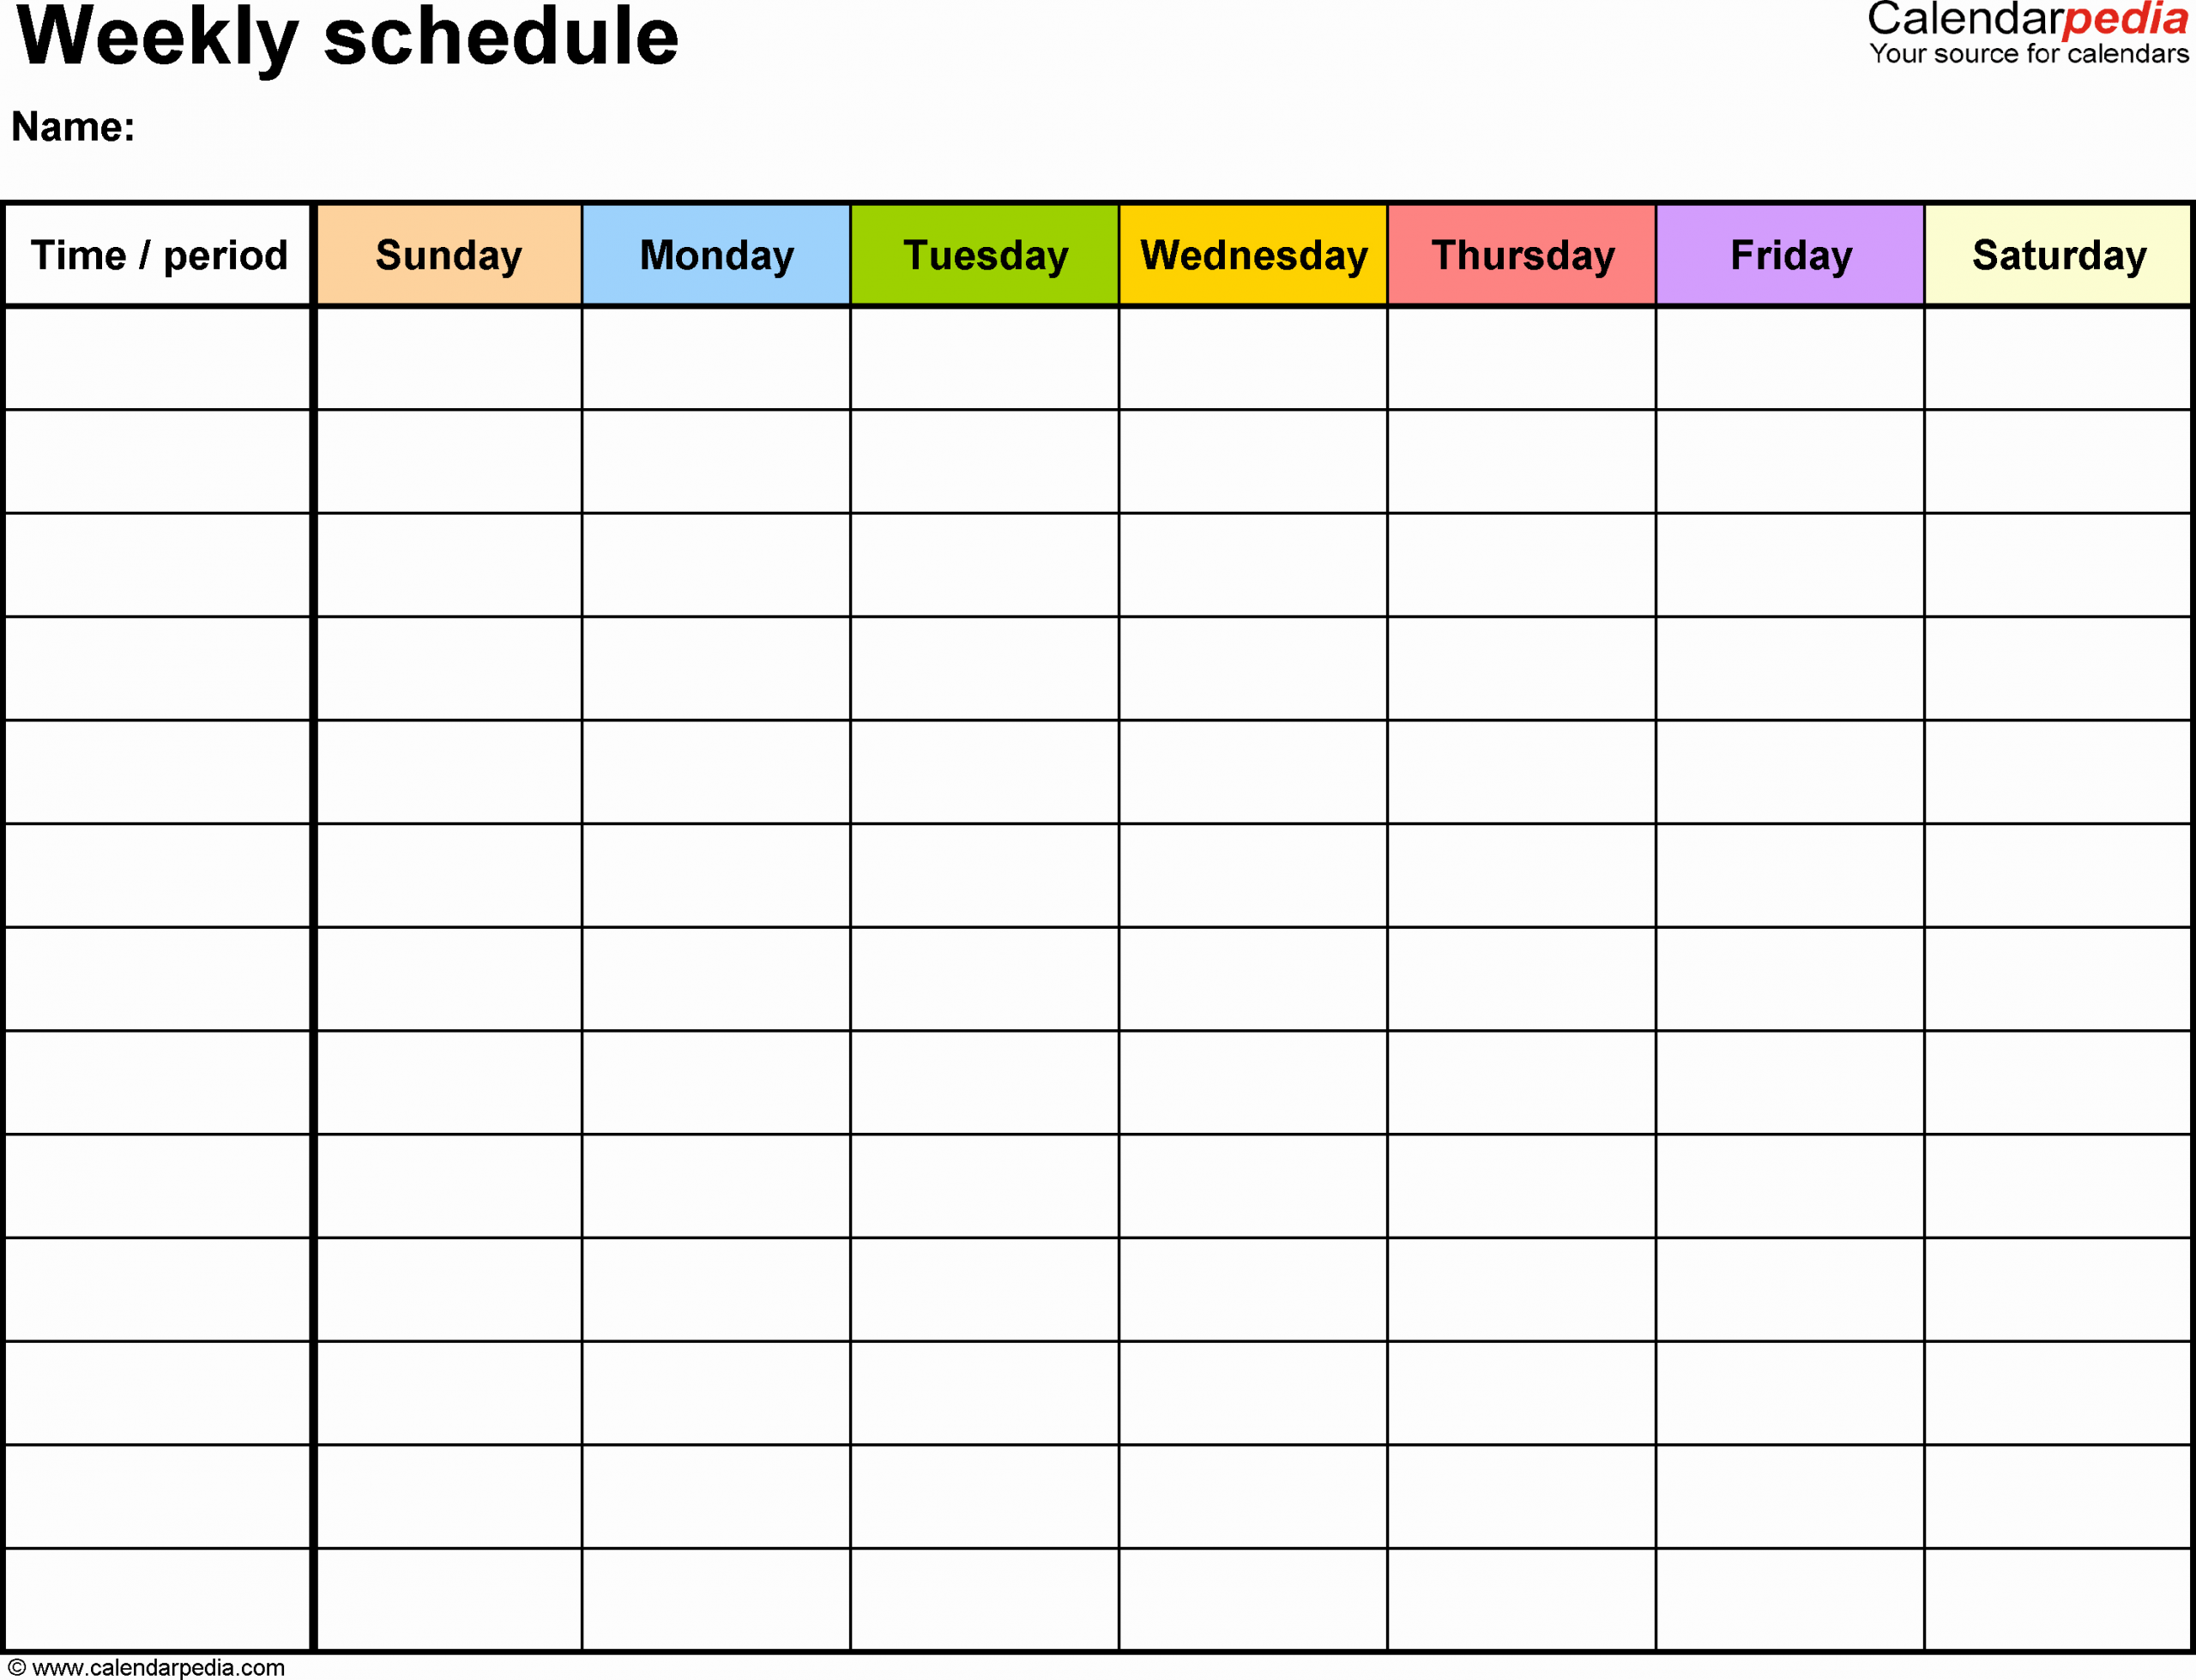 Week Time Schedule Template Elegant Free Weekly Schedule Templates for Word 18 Templates